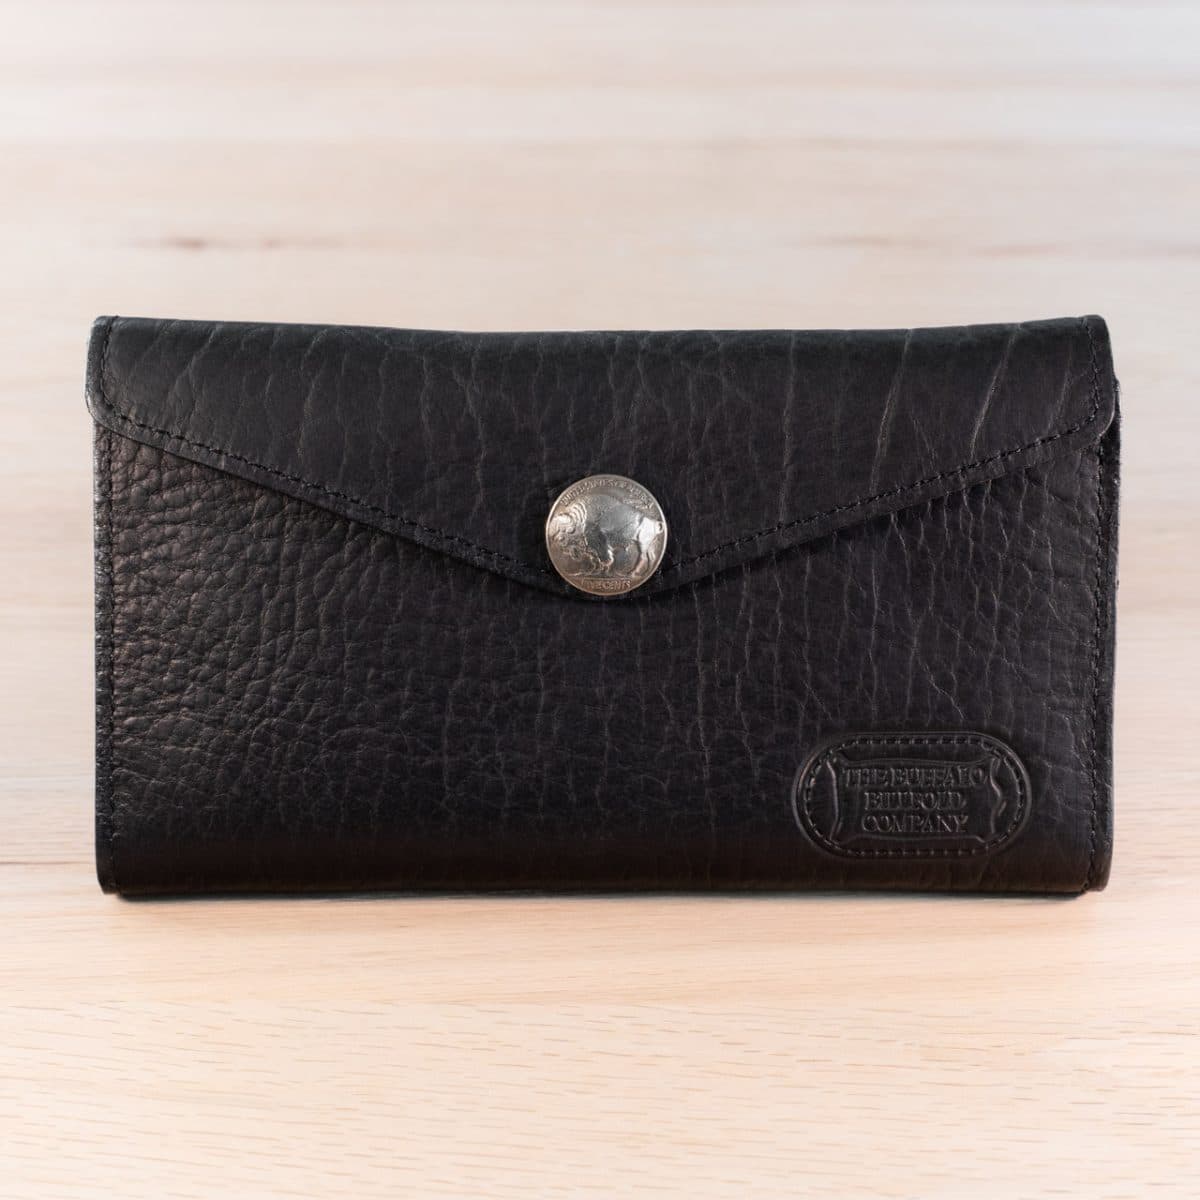 MK22495 - Custom Leather Envelope Wallets [Women's Leather Wallets